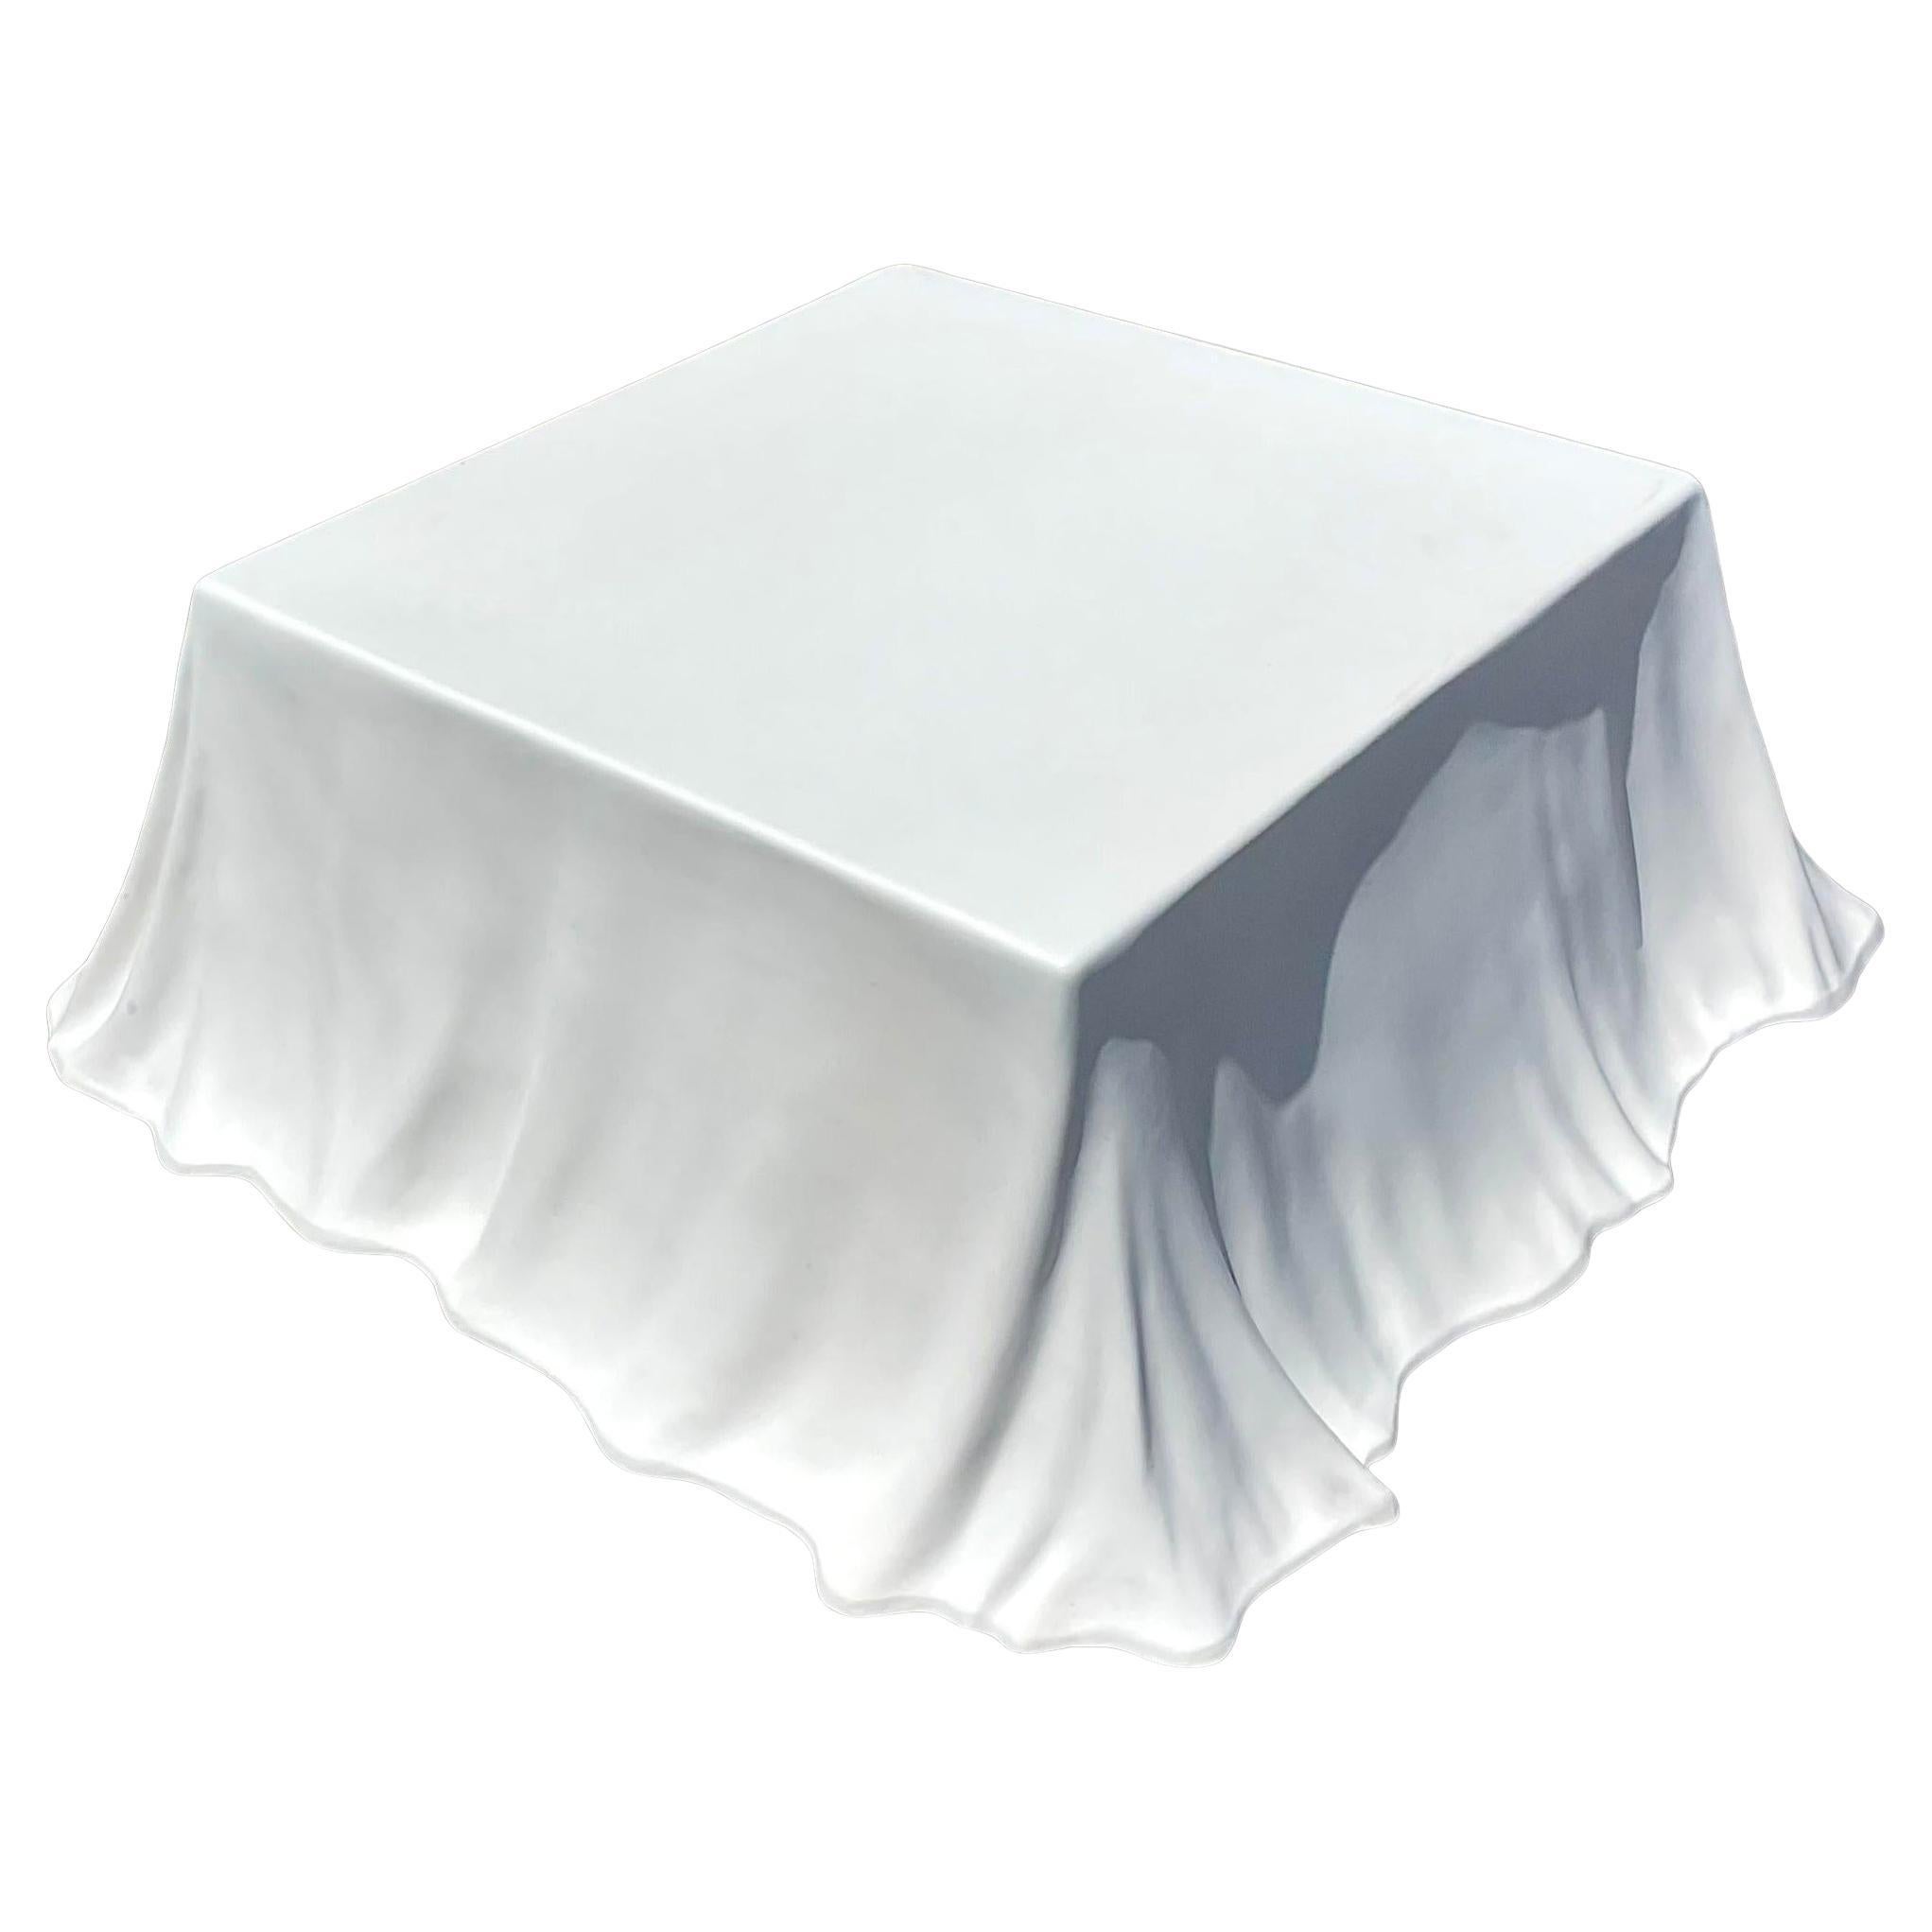 Table basse Tovaglia en fibre de verre moulée de style Régence du milieu du 20e siècle Après